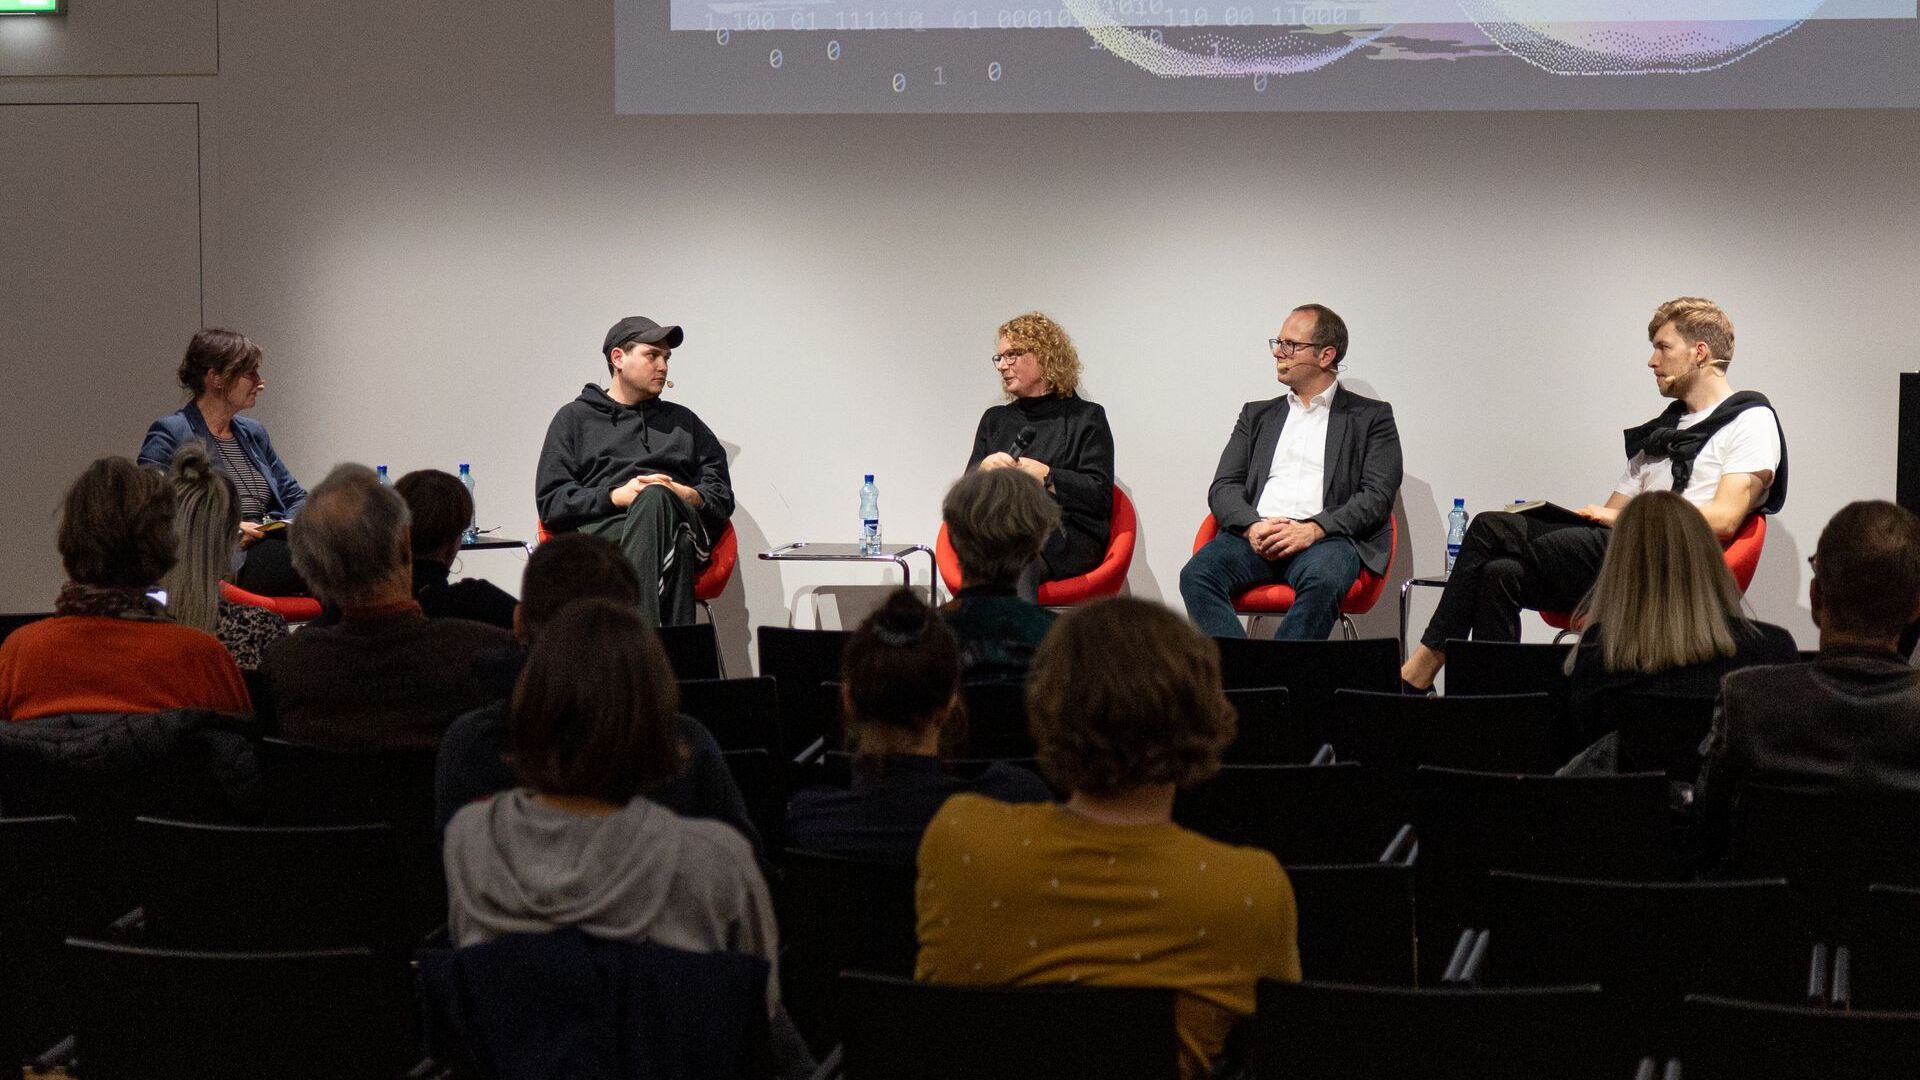 L'evento preliminare alla 'Giornata Digitale Svizzera' del 10 novembre 2021 presso l'Università delle Arti di Zurigo